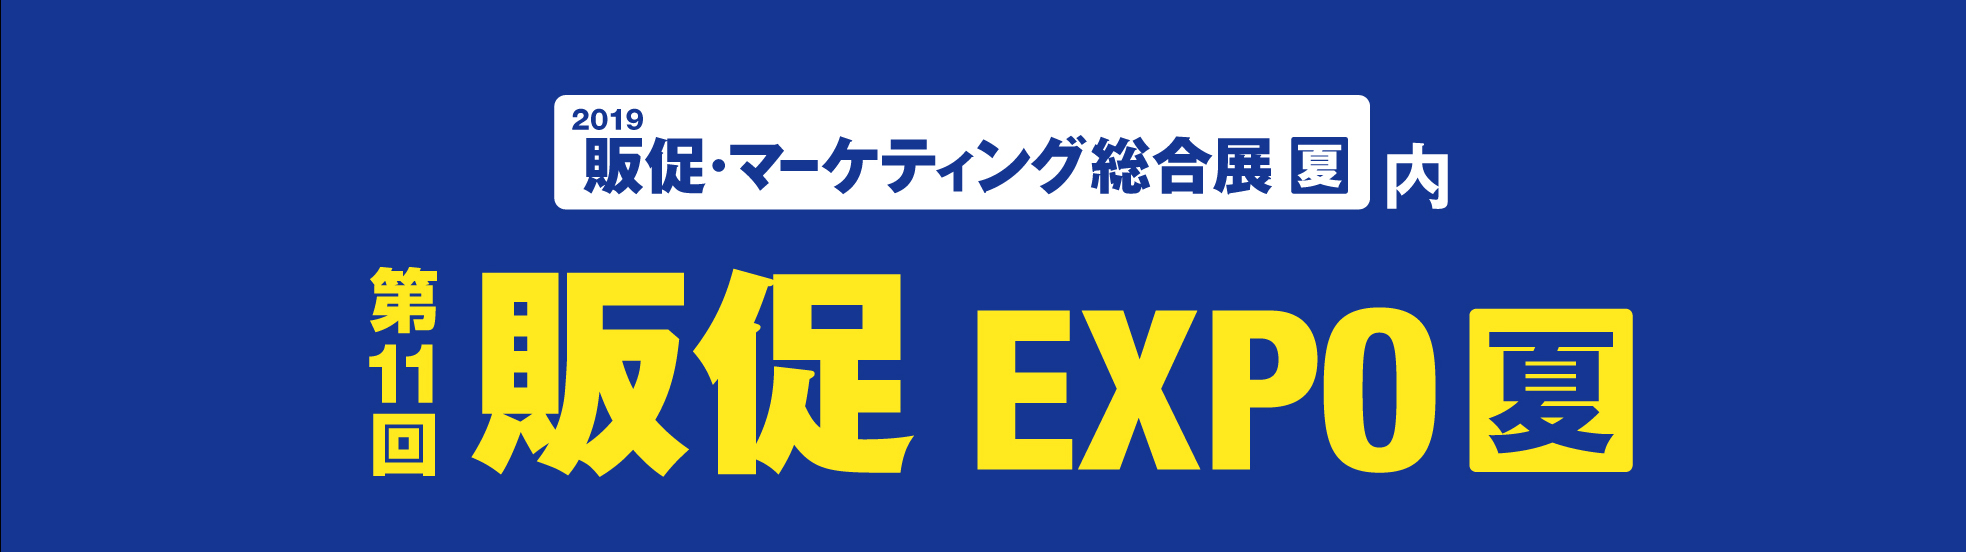 第11回 販促 EXPO【夏】に出展いたします。